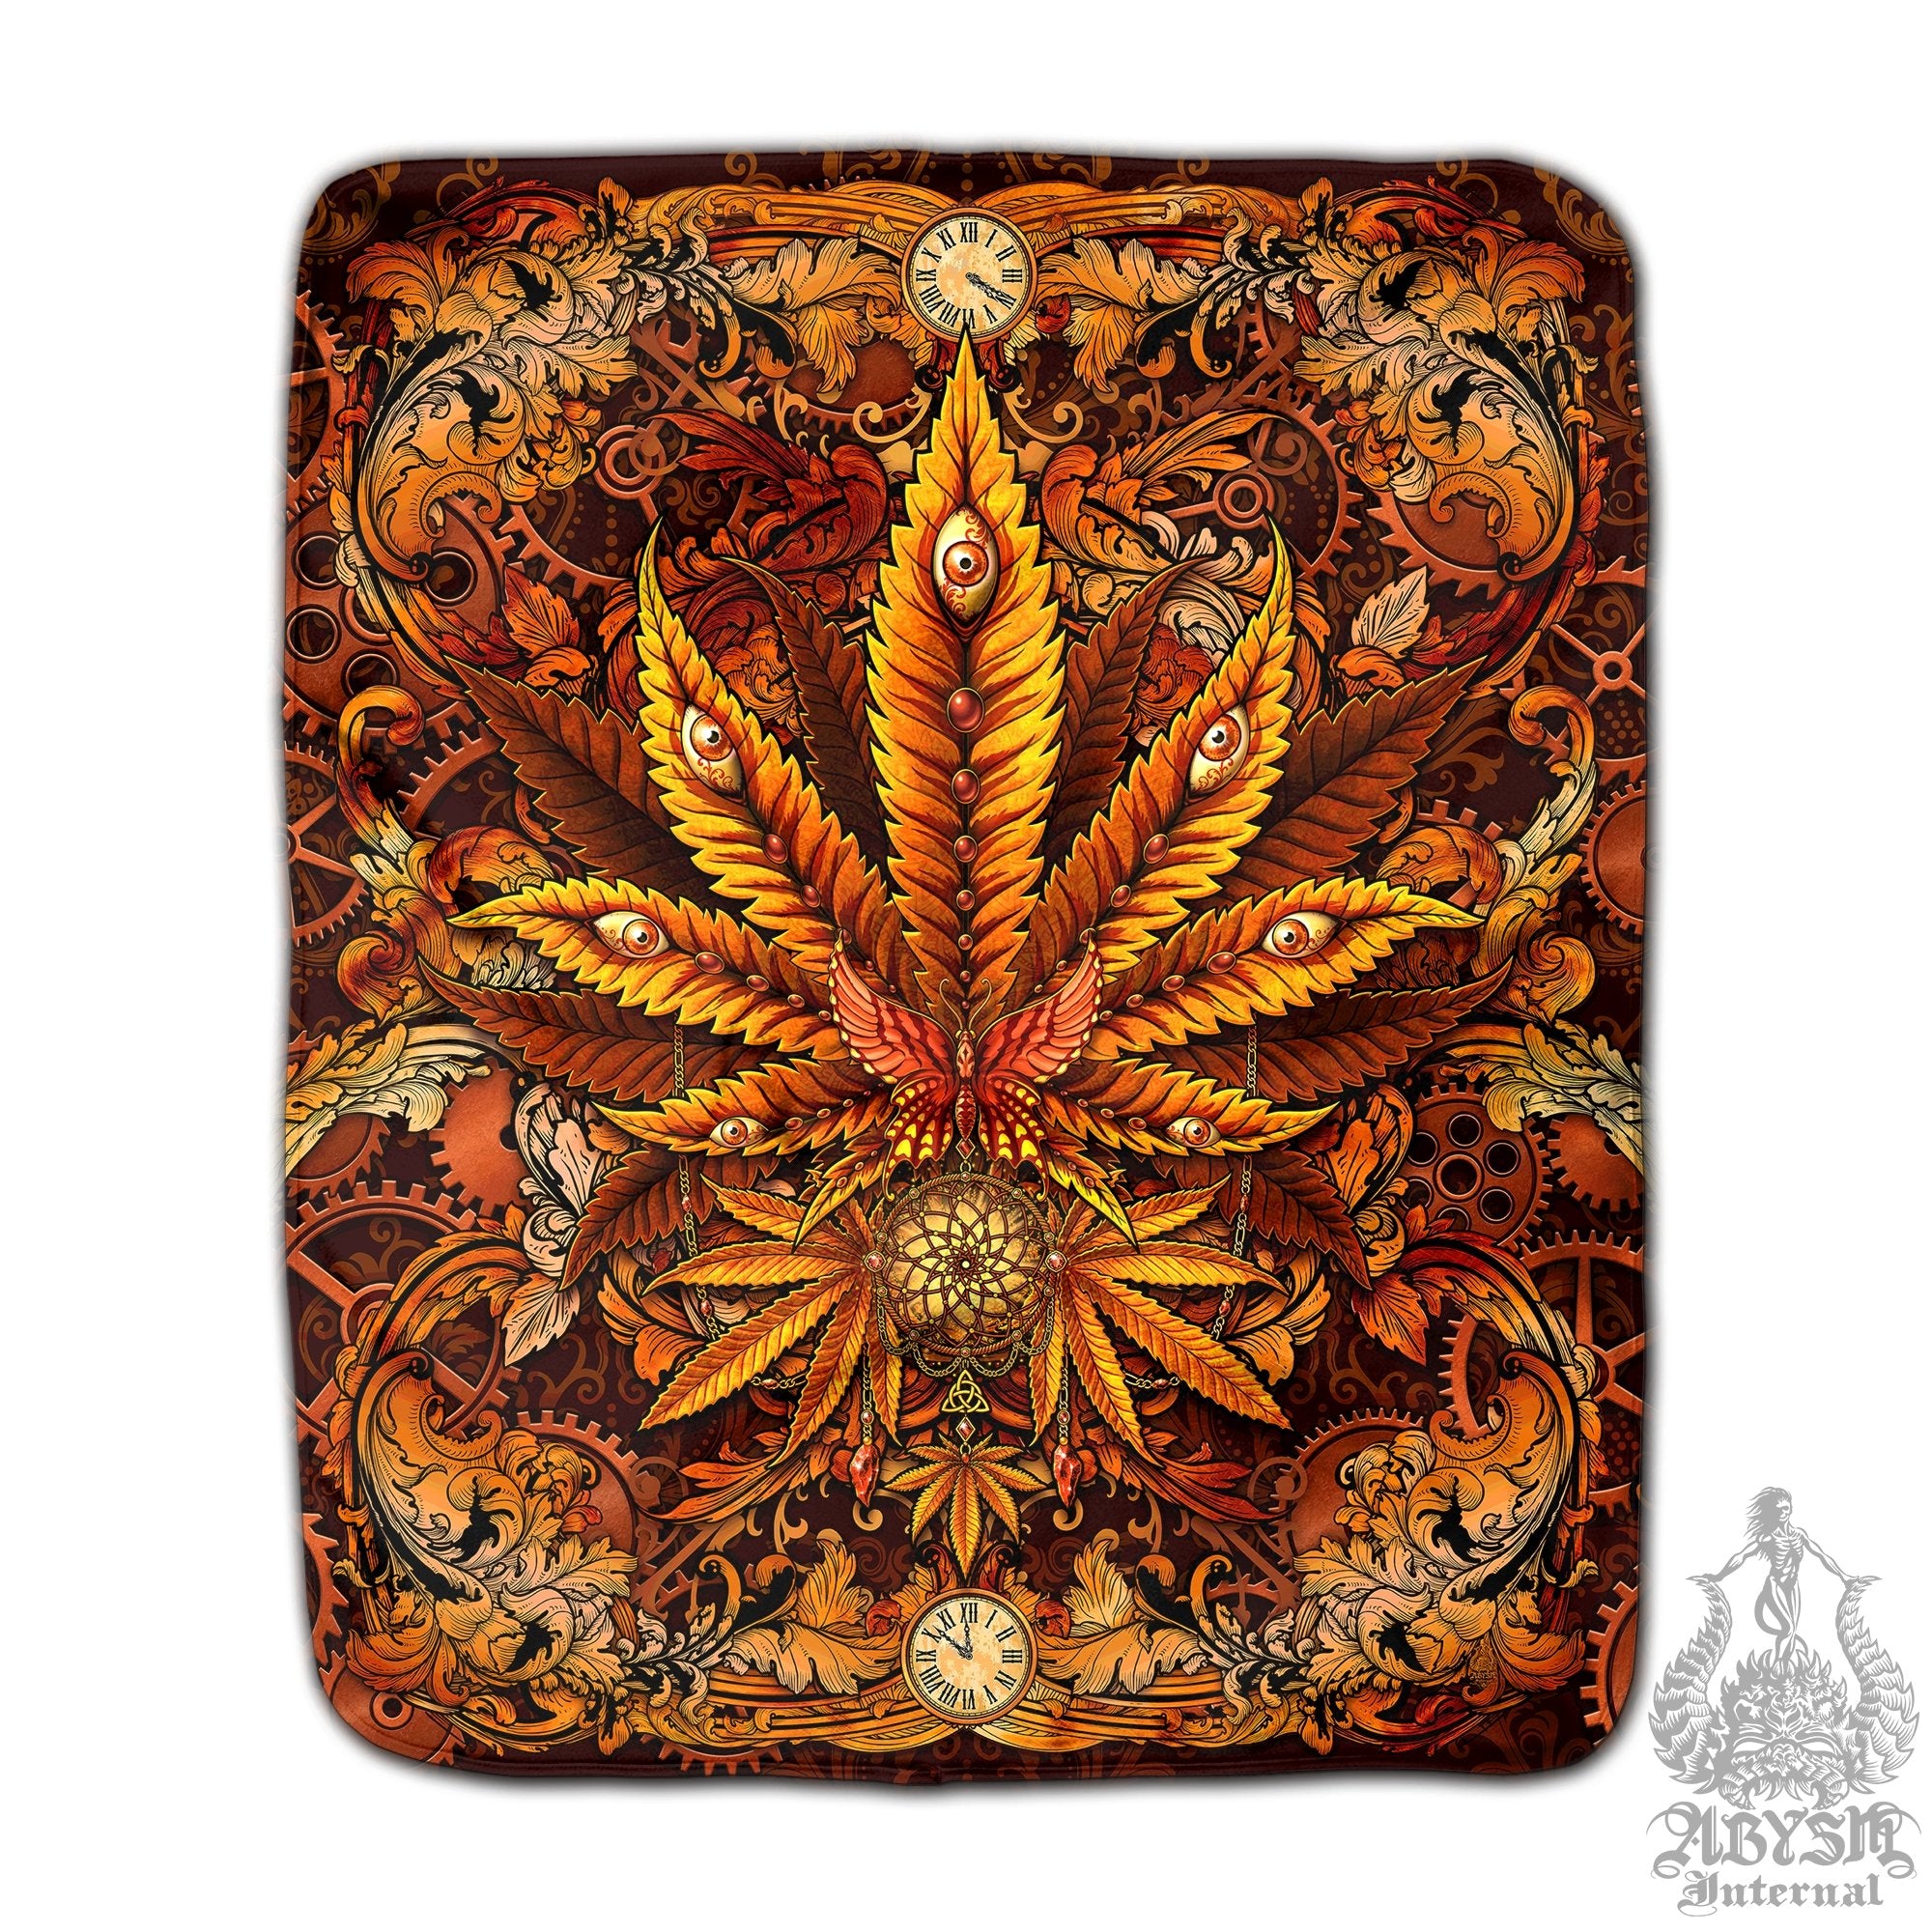 Weed Throw Fleece Blanket, Cannabis Art, Indie and Hippie Home Decor, 420 Gift - Marijuana, Steampunk - Abysm Internal